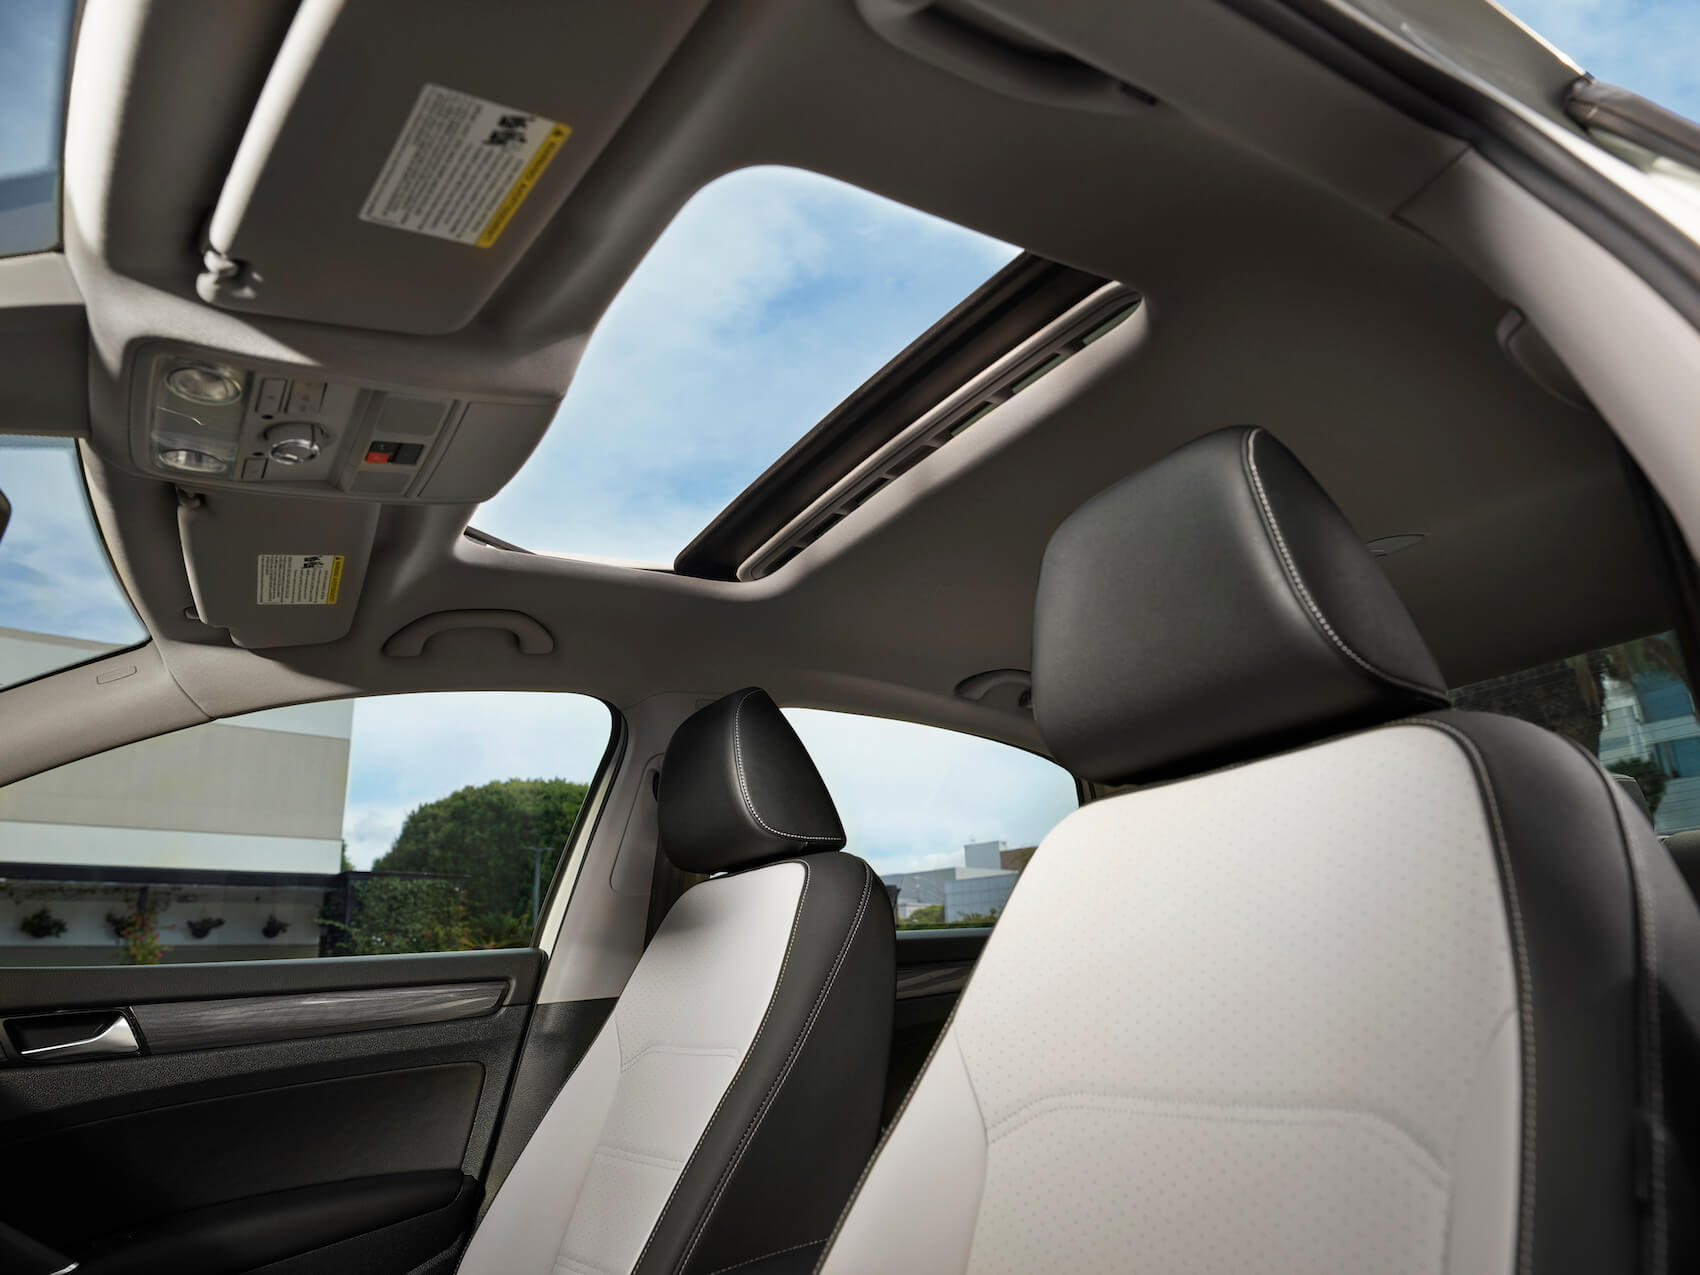 2021 Volkswagen Passat interior comfort Avon, IN